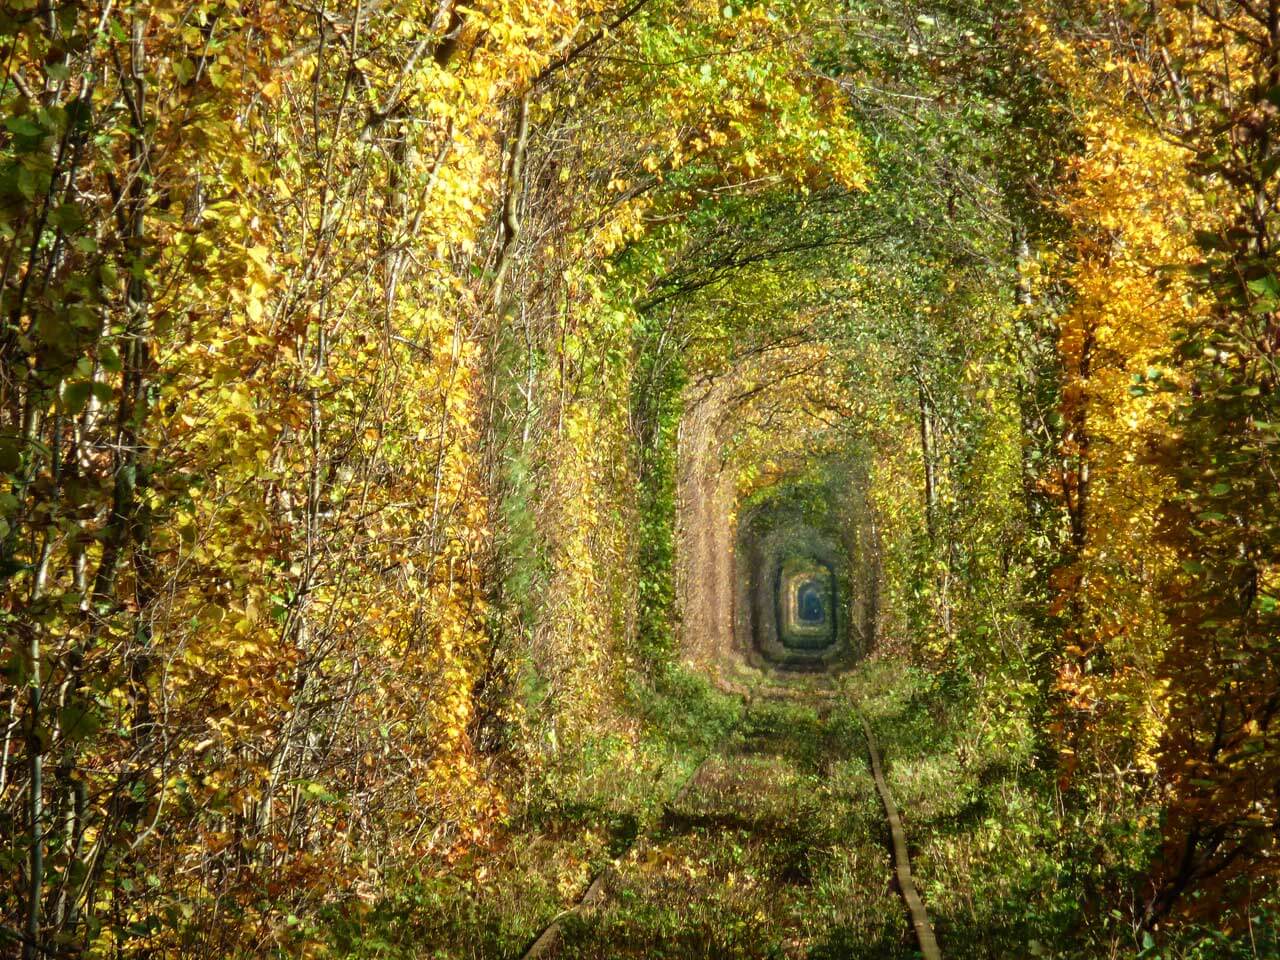 Tunel del Amor